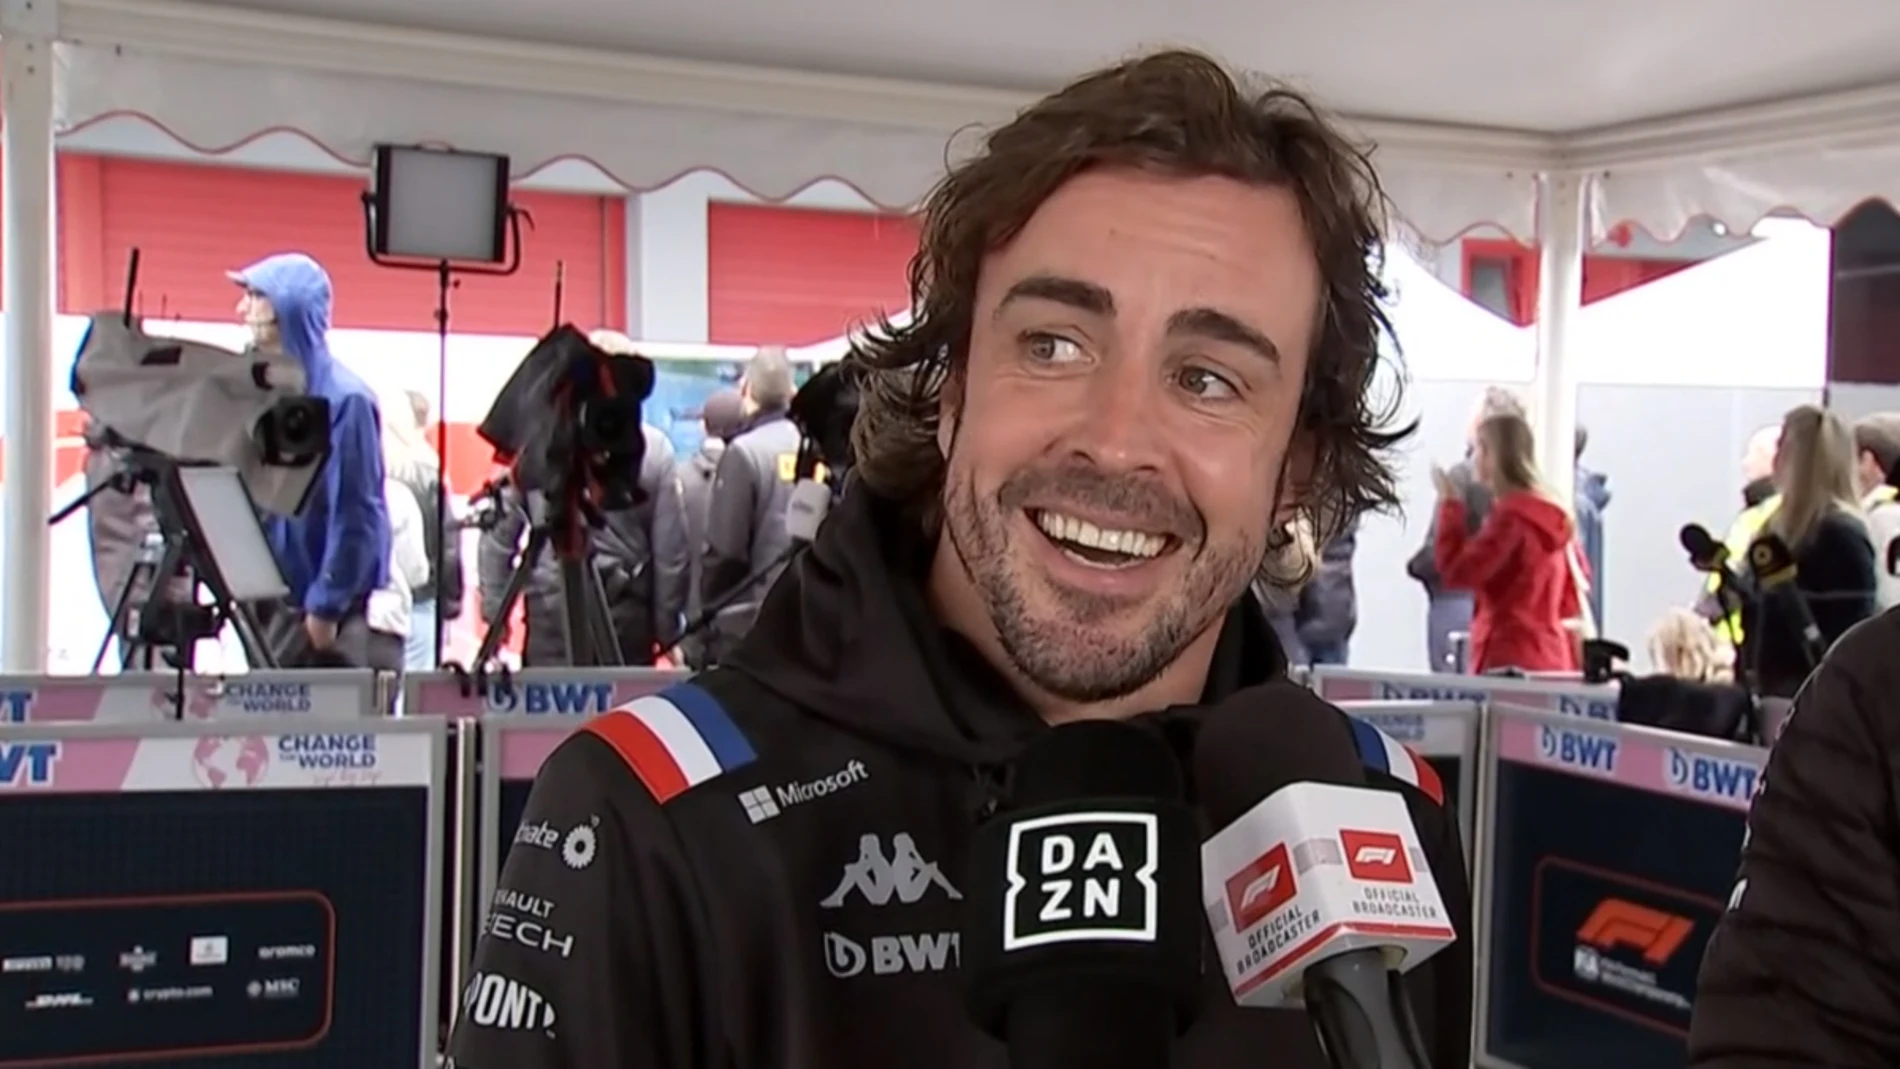 Fernando Alonso, en plena entrevista